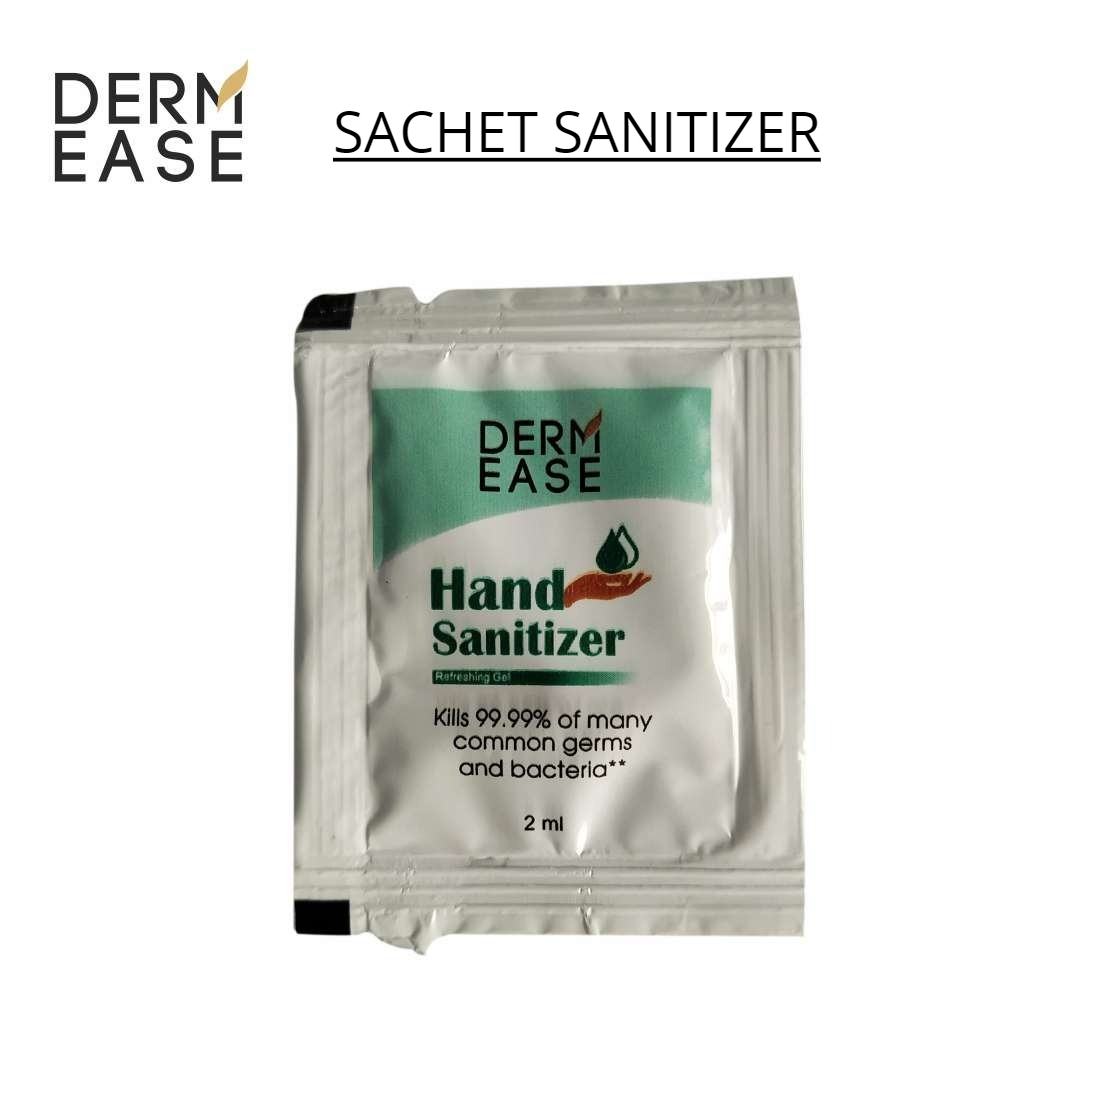 DERM EASE Pack of 200 Hand Sanitizer Sachet Each 2ml